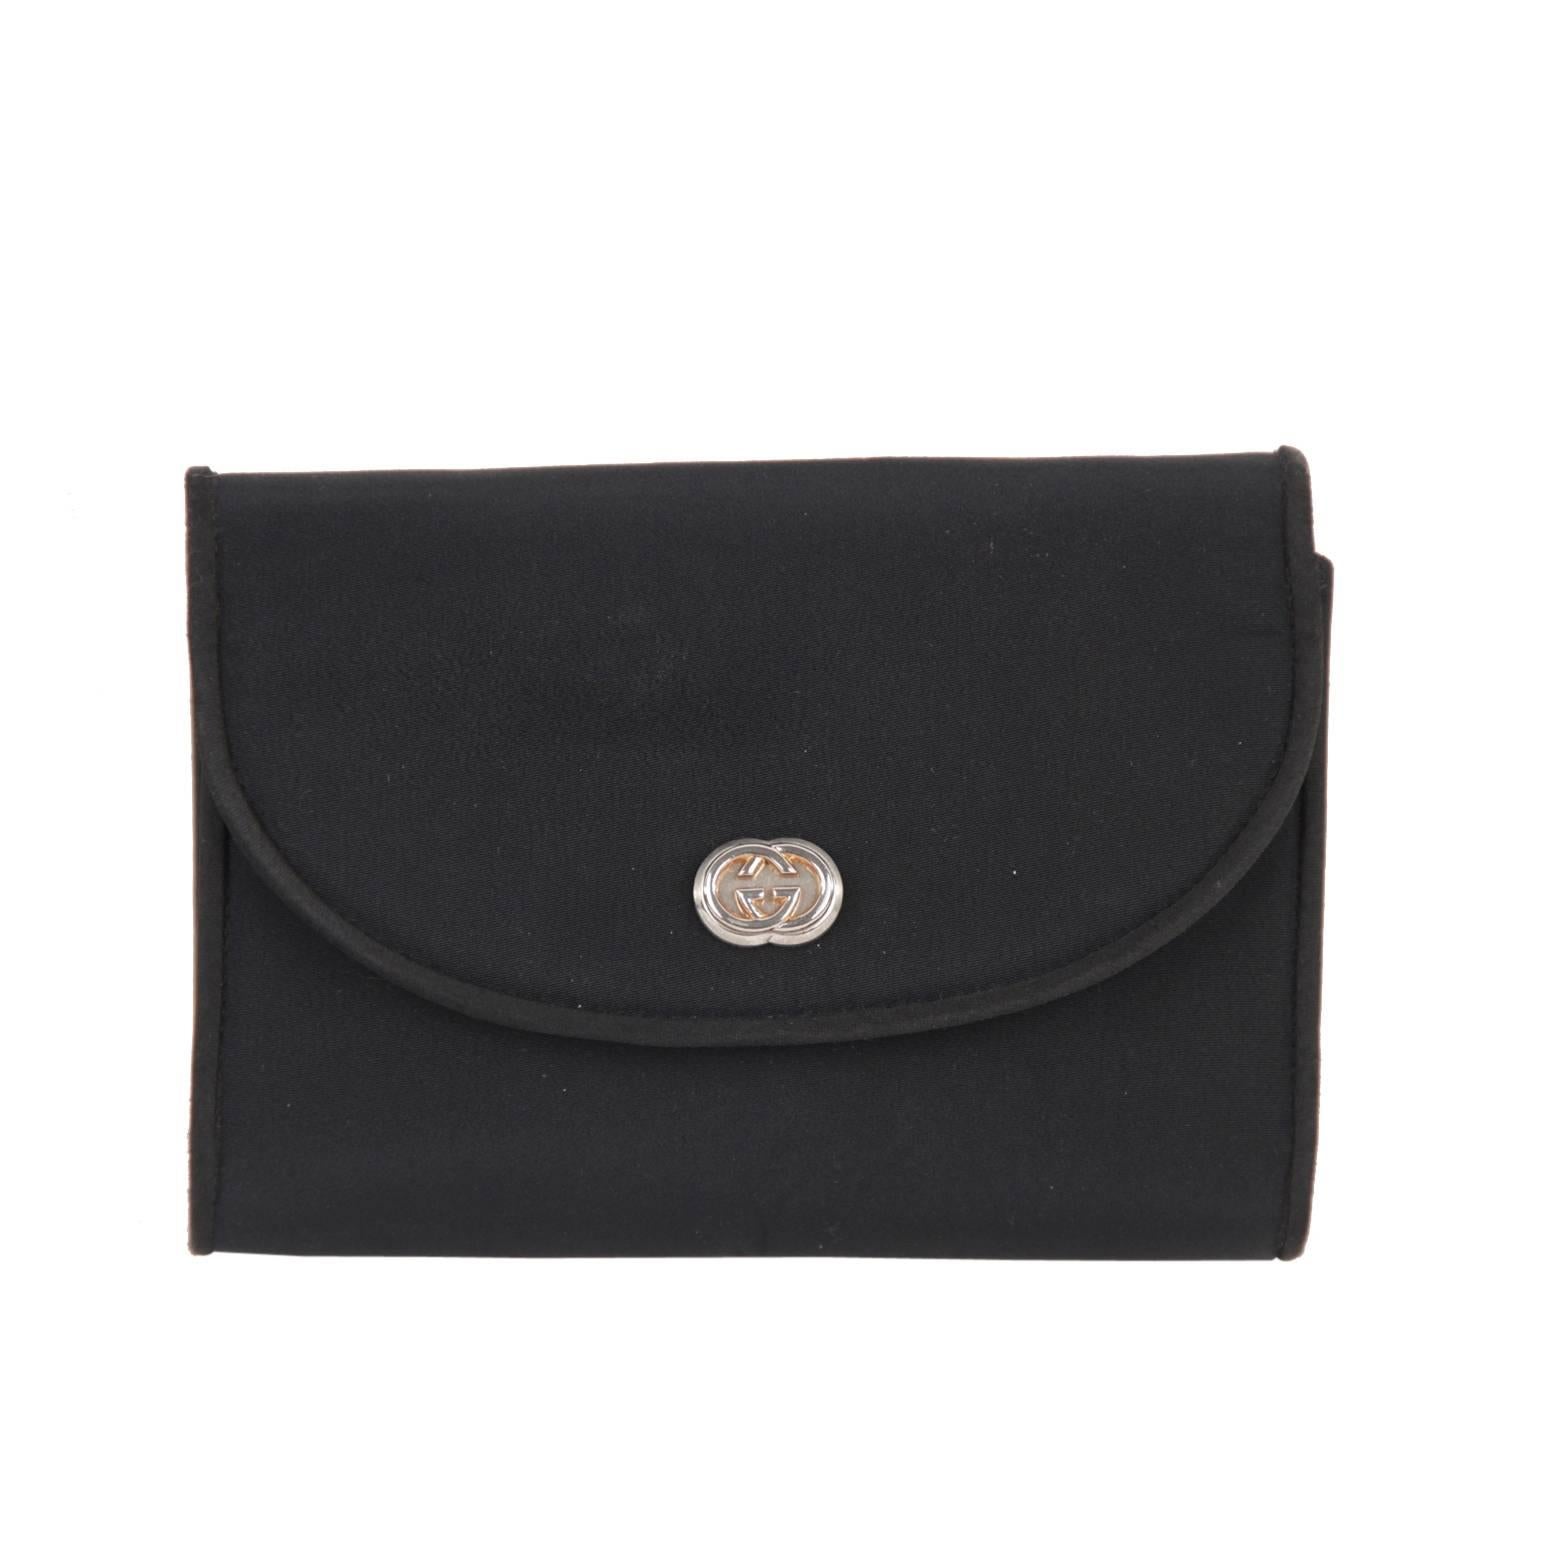 GUCCI Italian VINTAGE Black Fabric CLUTCH Handbag PURSE Evening Bag w/ Chain